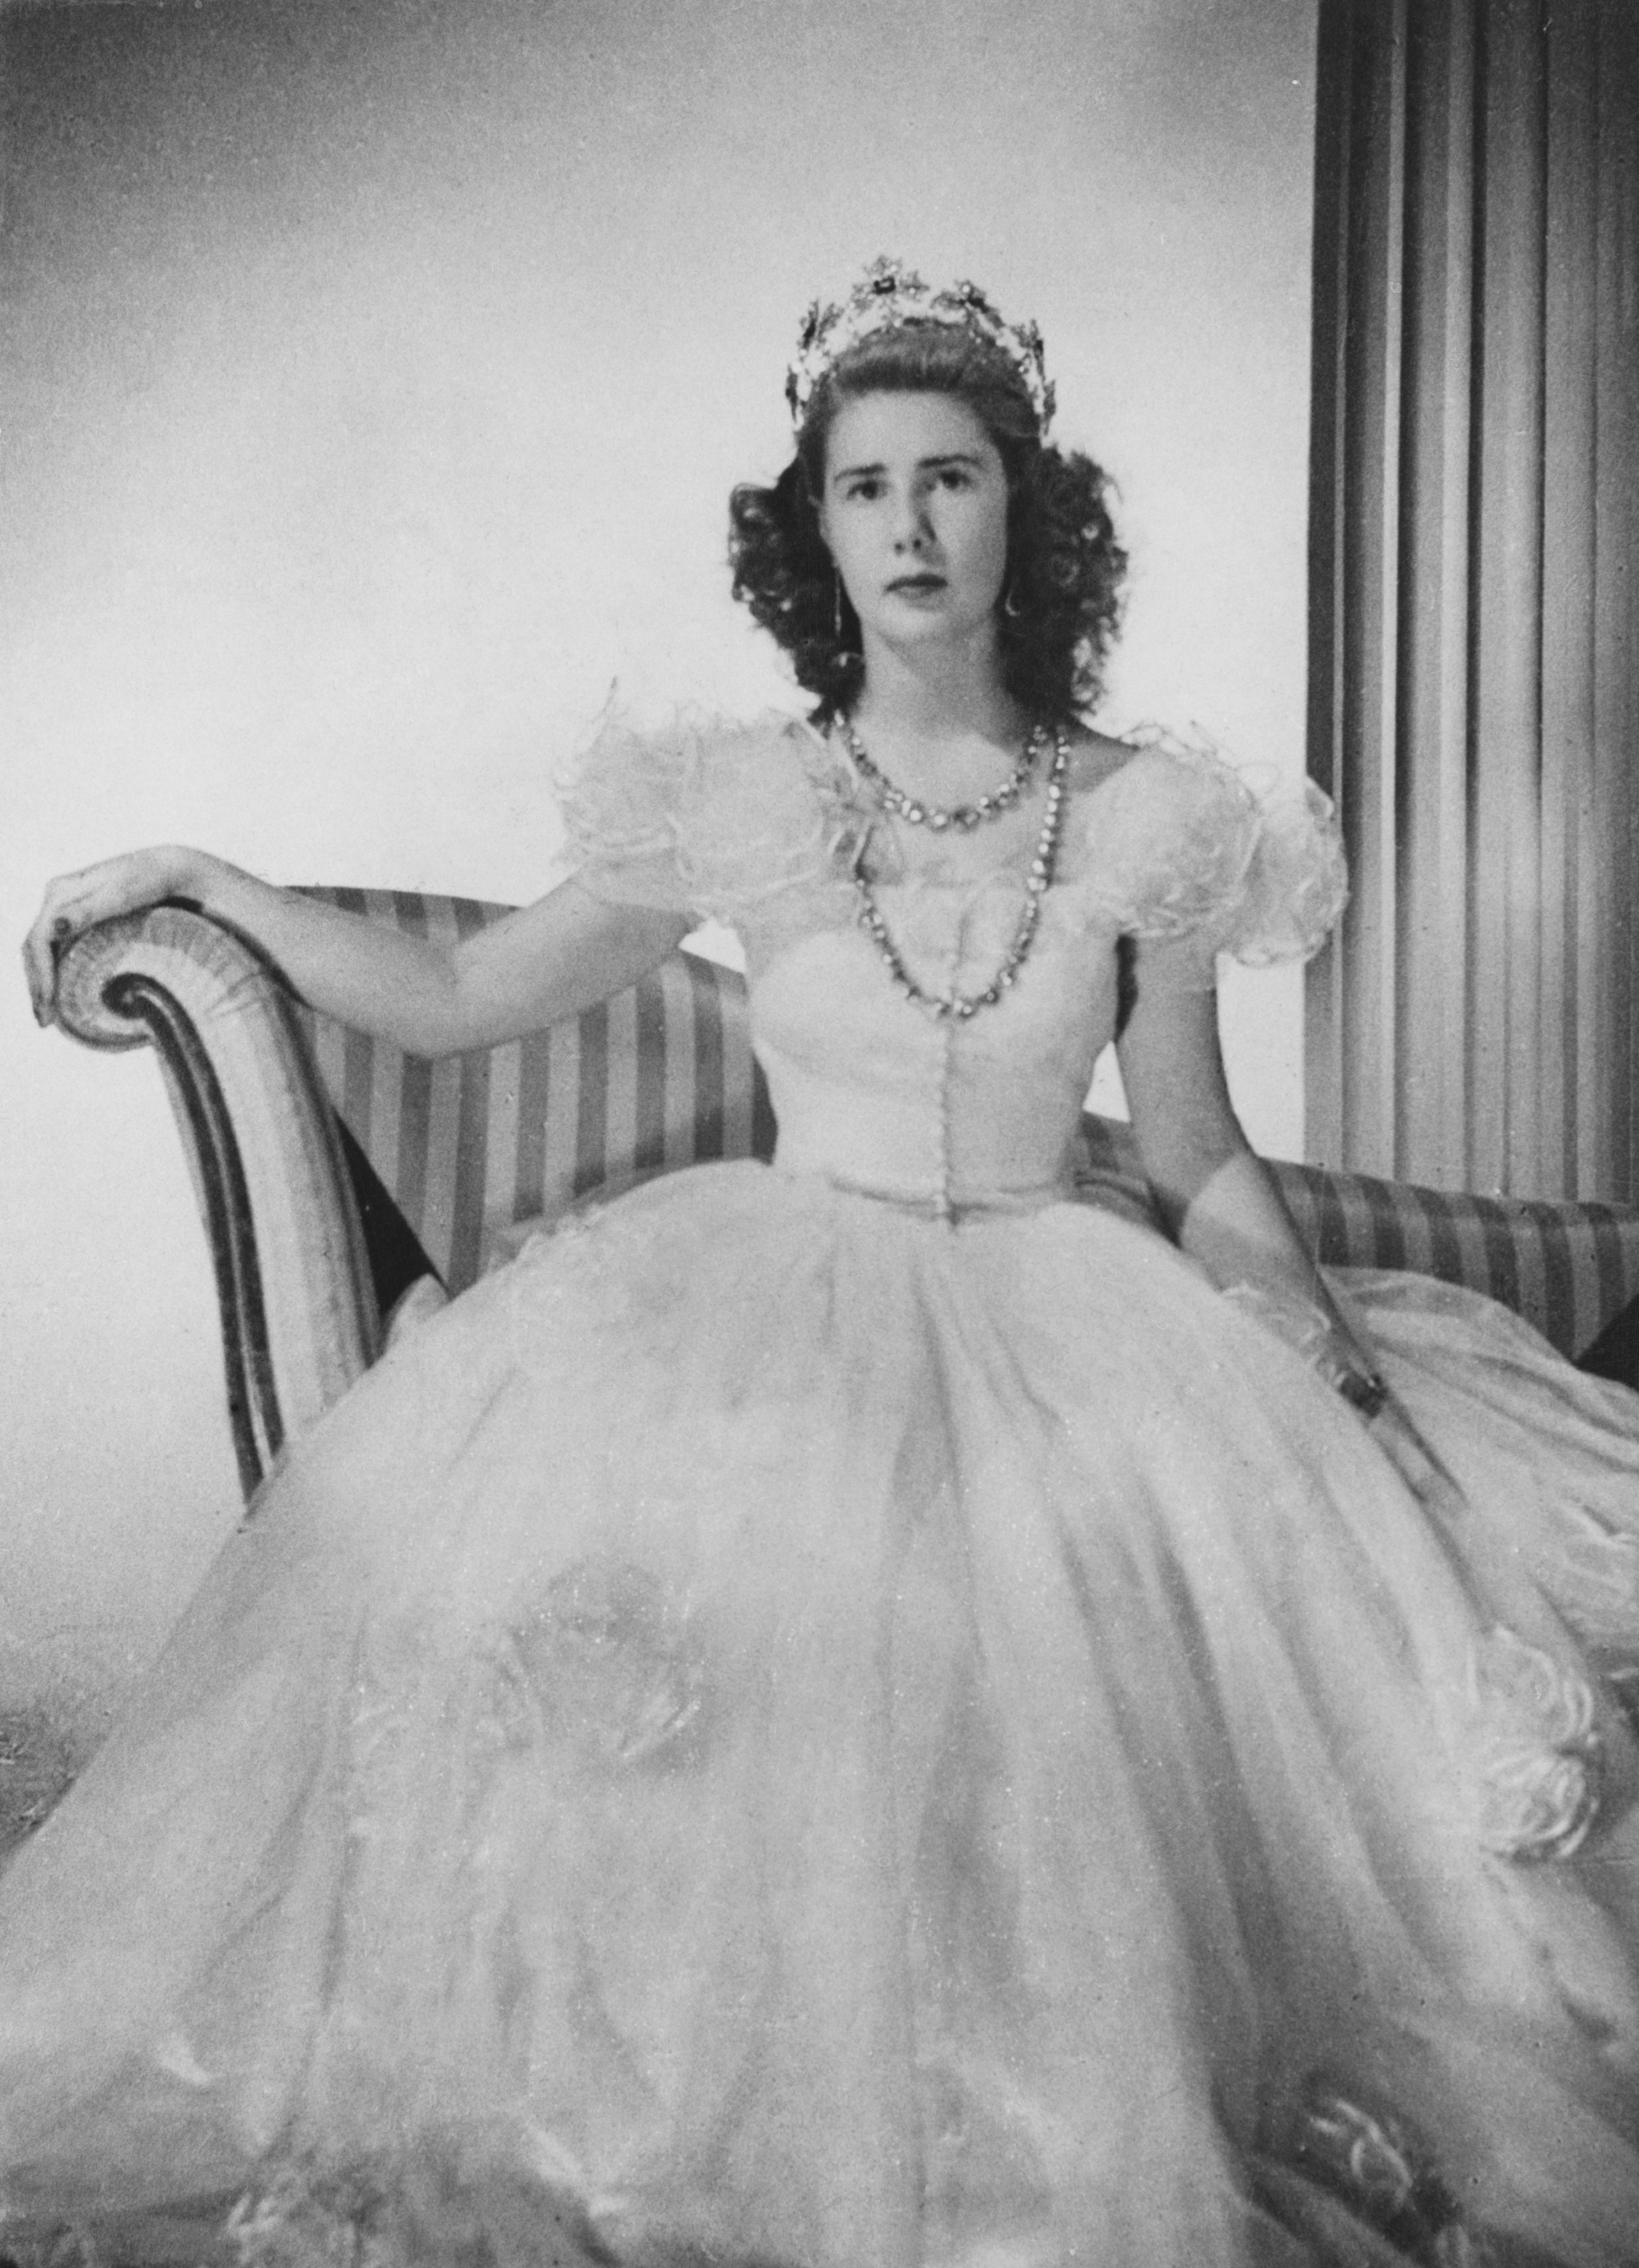 La duchesse d'Alba, Maria del Rosario Cayetana Fitz-James Stuart, photographiée en 1947. | Source : Getty Images